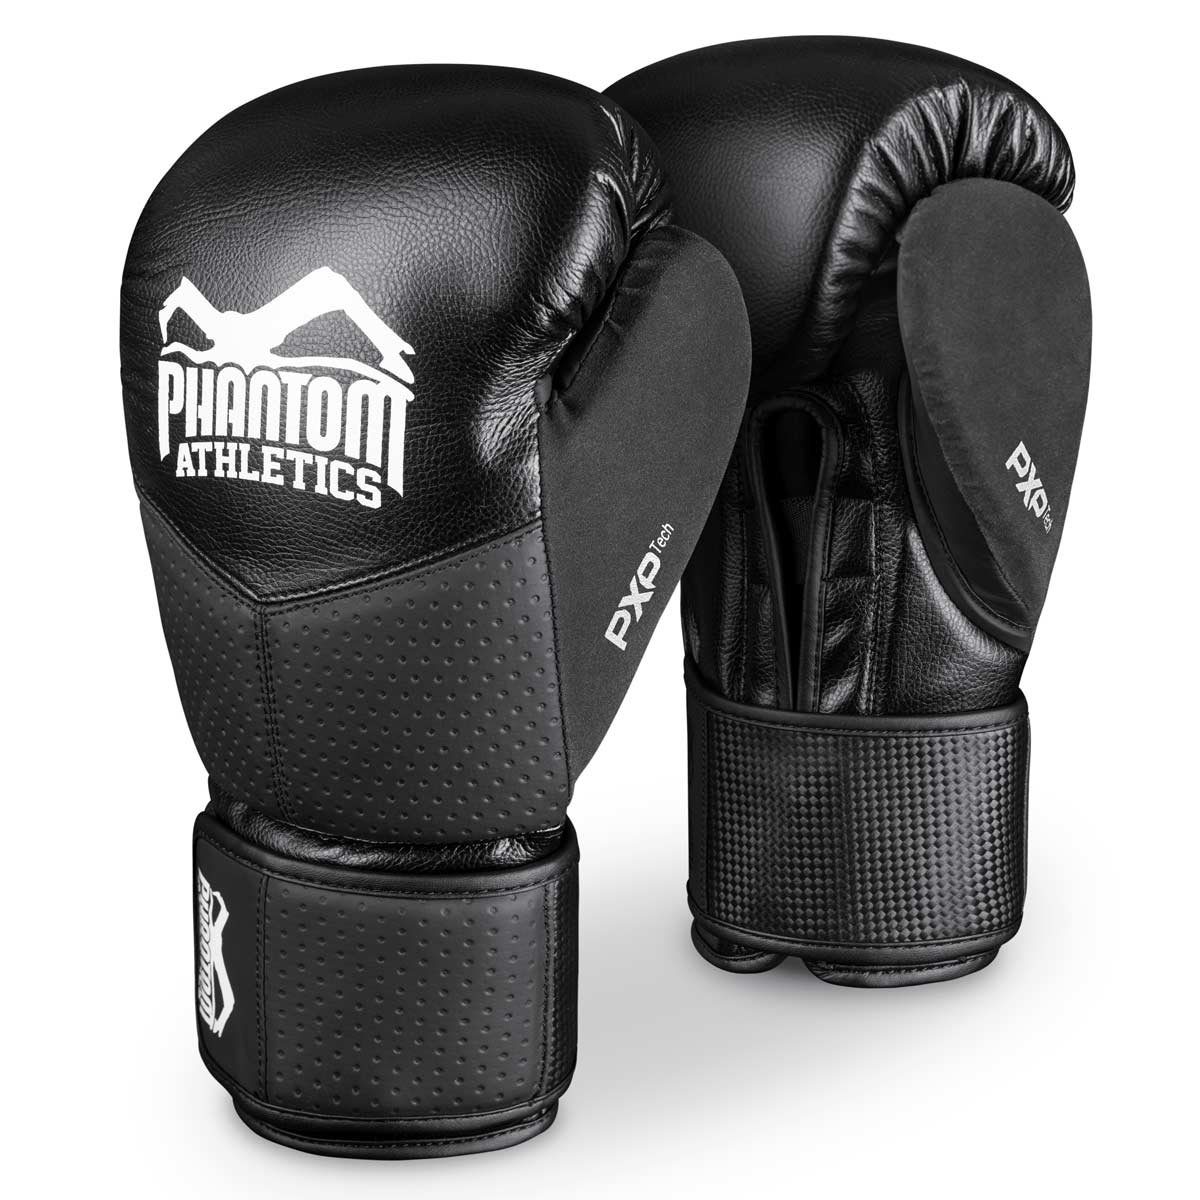 Phantom RIOT PRO boksehandskerne. Ideel til din kampsport træning og konkurrencer. Perfekt pasform og overlegen kvalitet til træning og sparring.